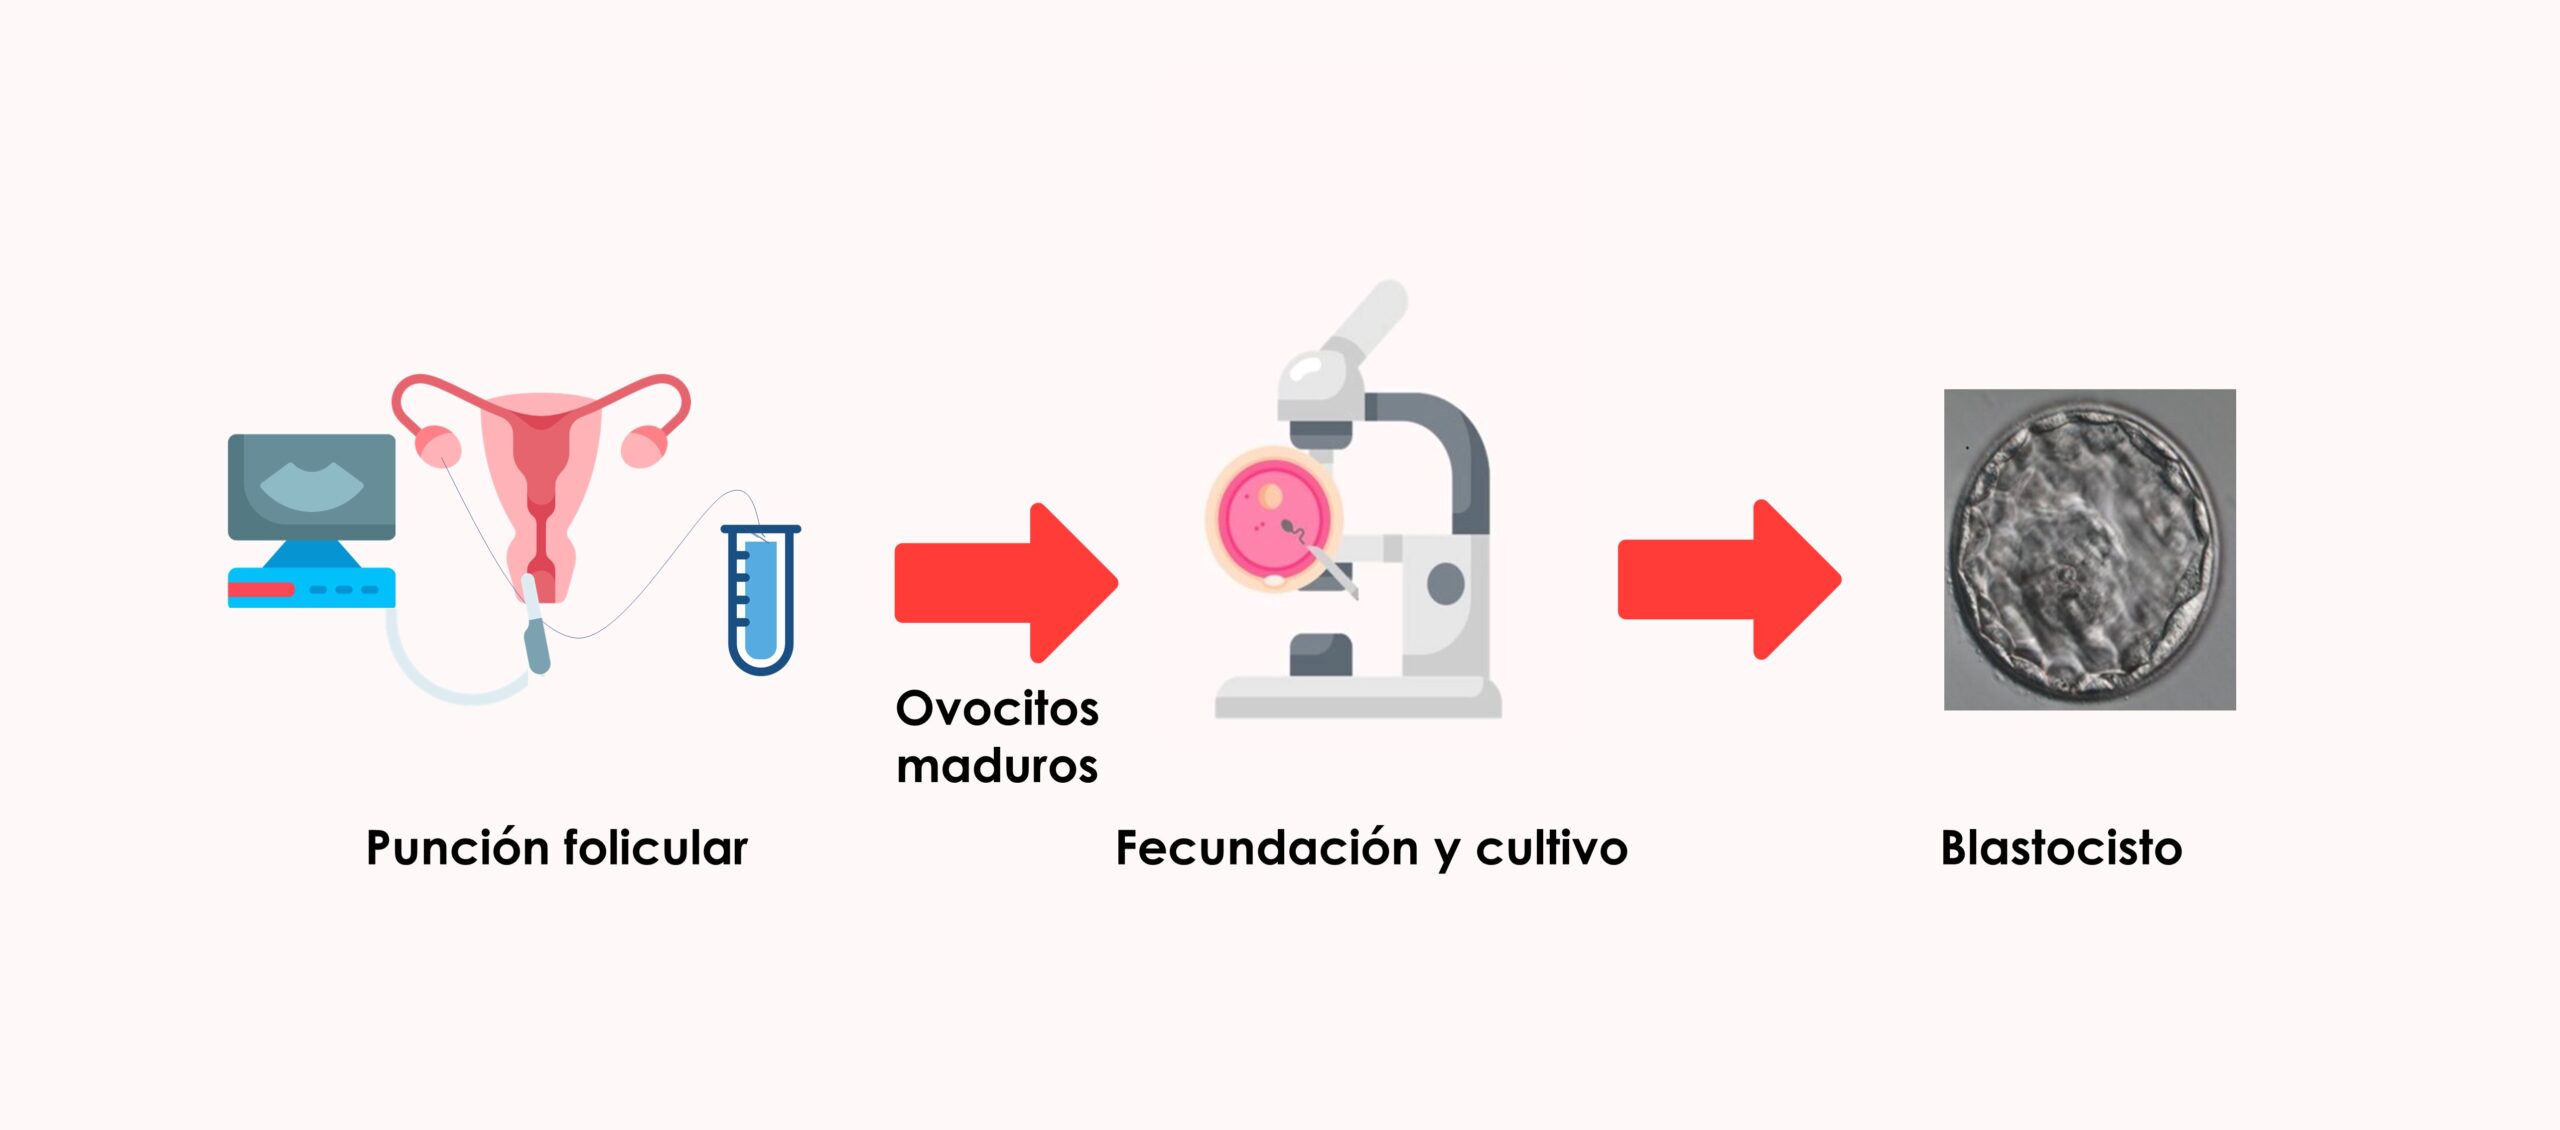 El número de ovocitos obtenidos en punción ovárica no suele corresponderse con el número de embriones disponibles para transferencia embrionaria